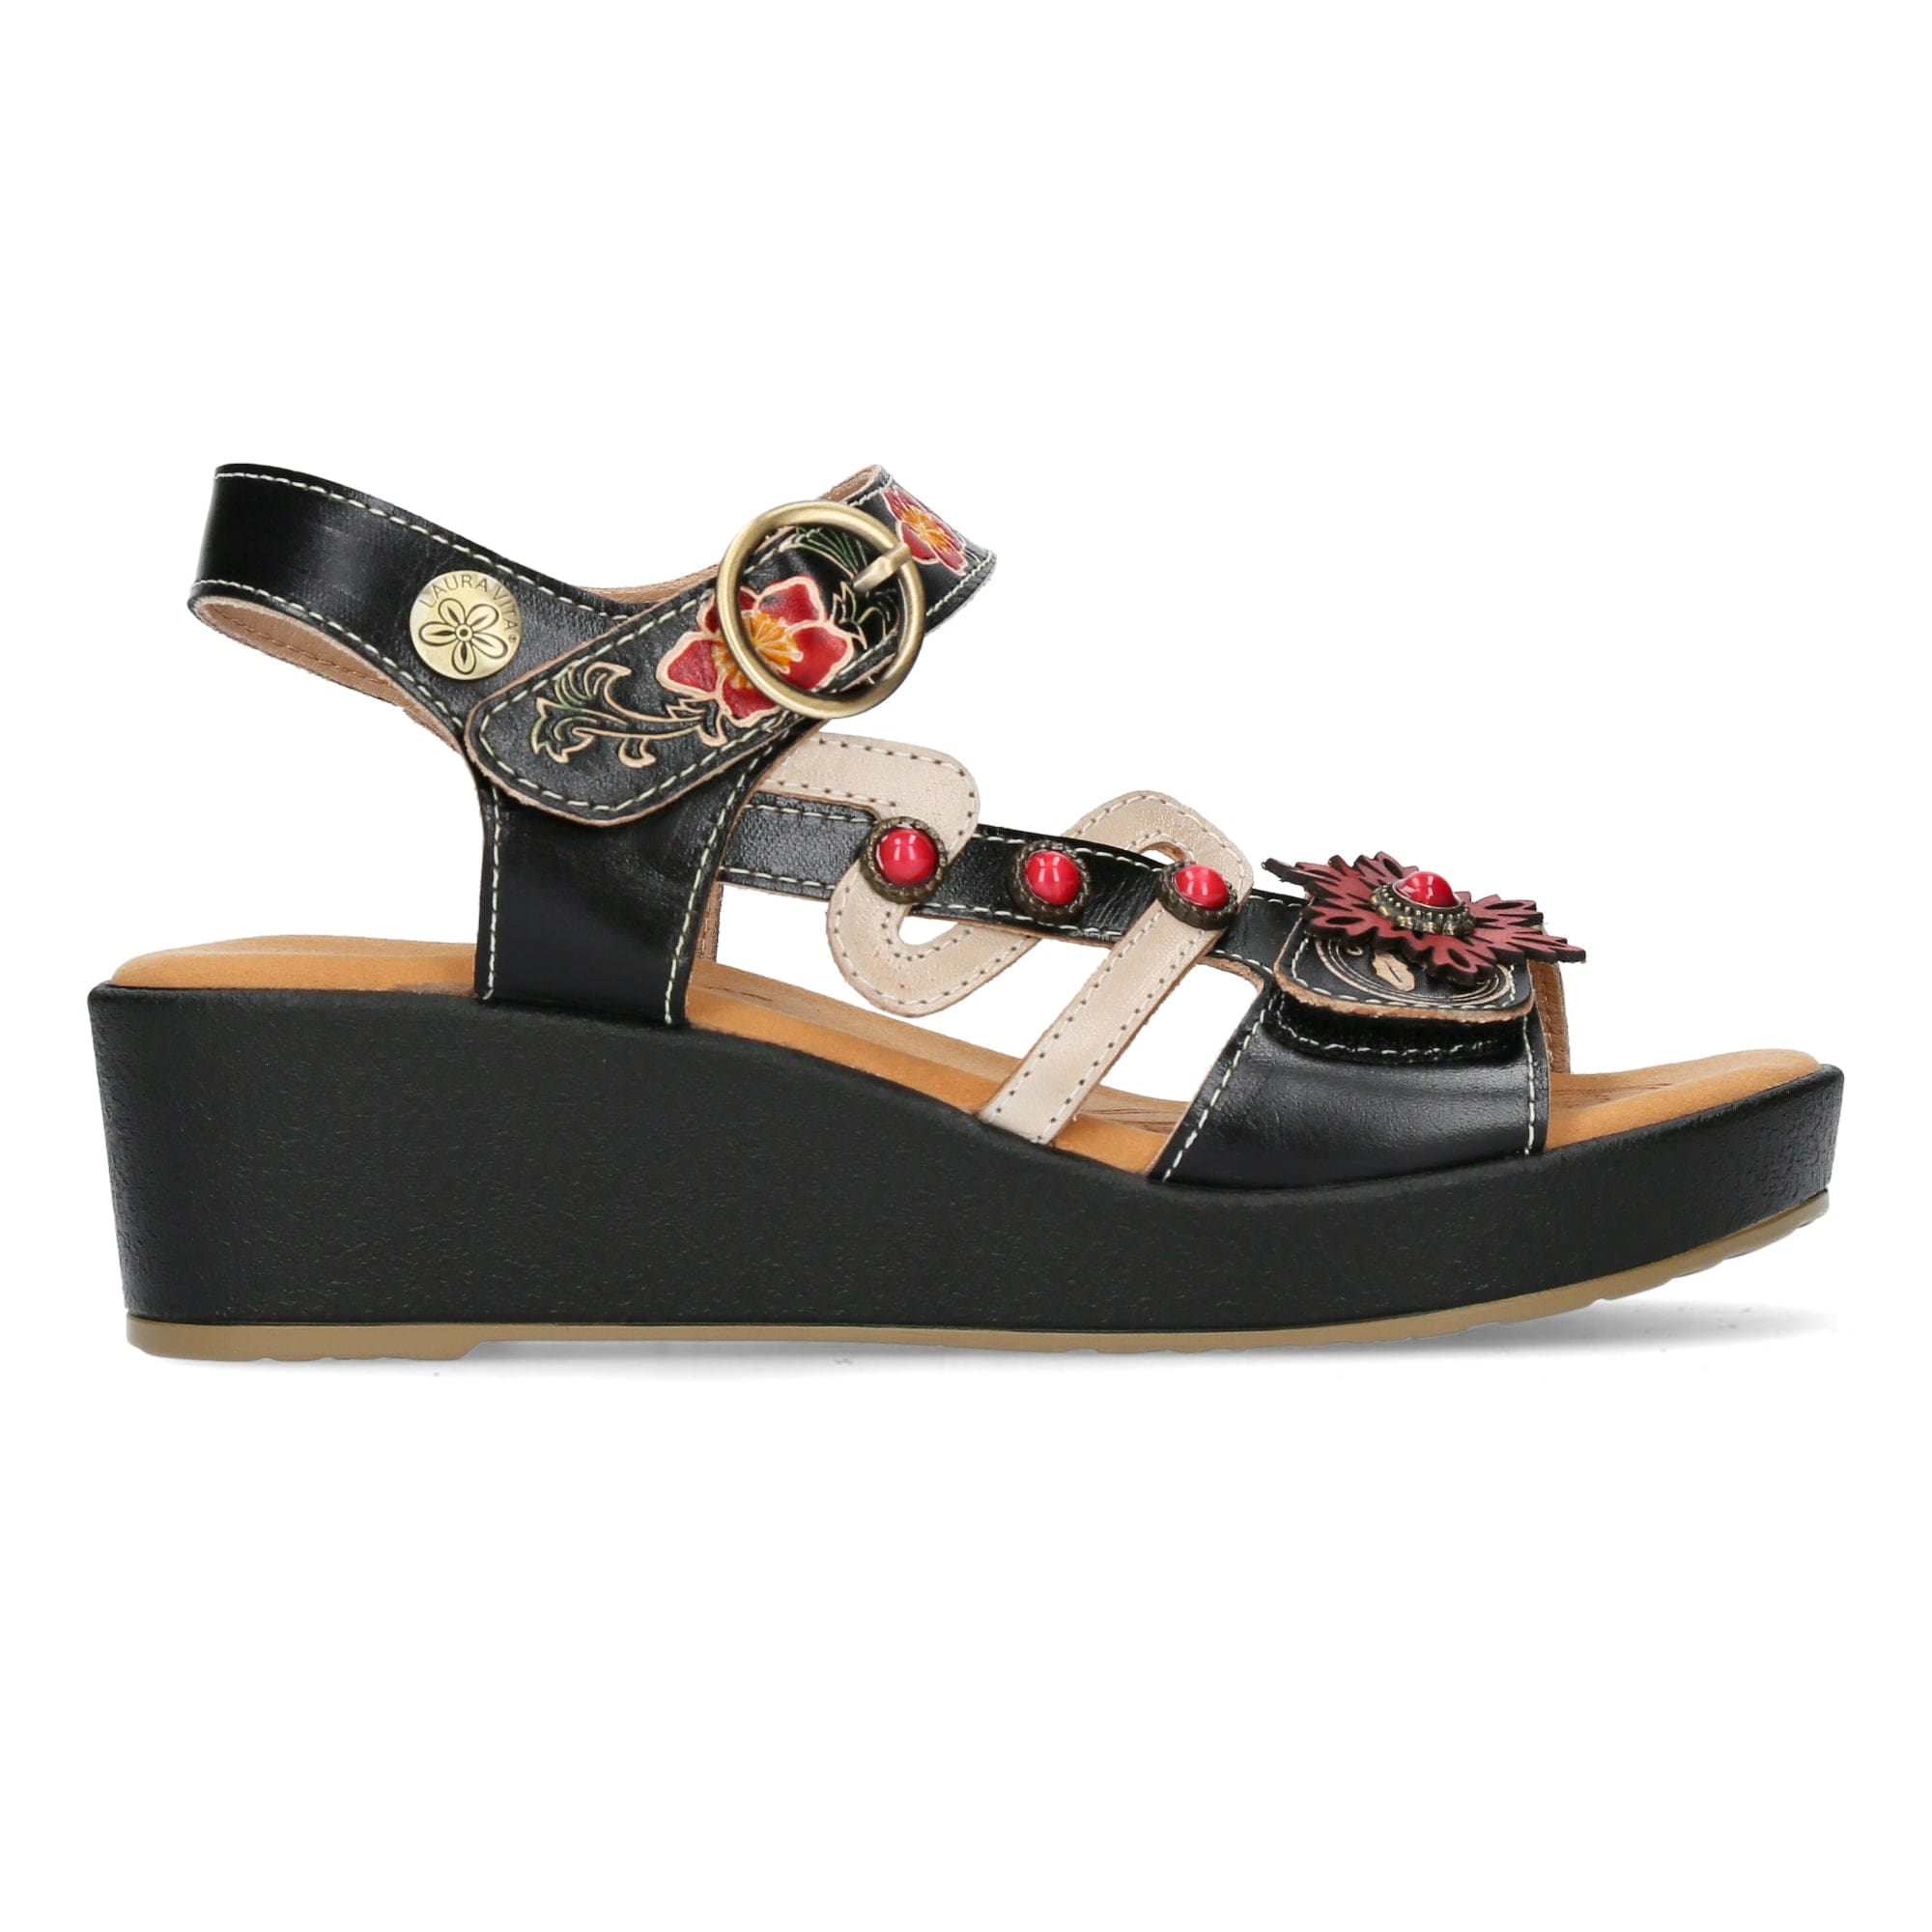 Shoe FACRAHO 124 - 35 / Black Sandal